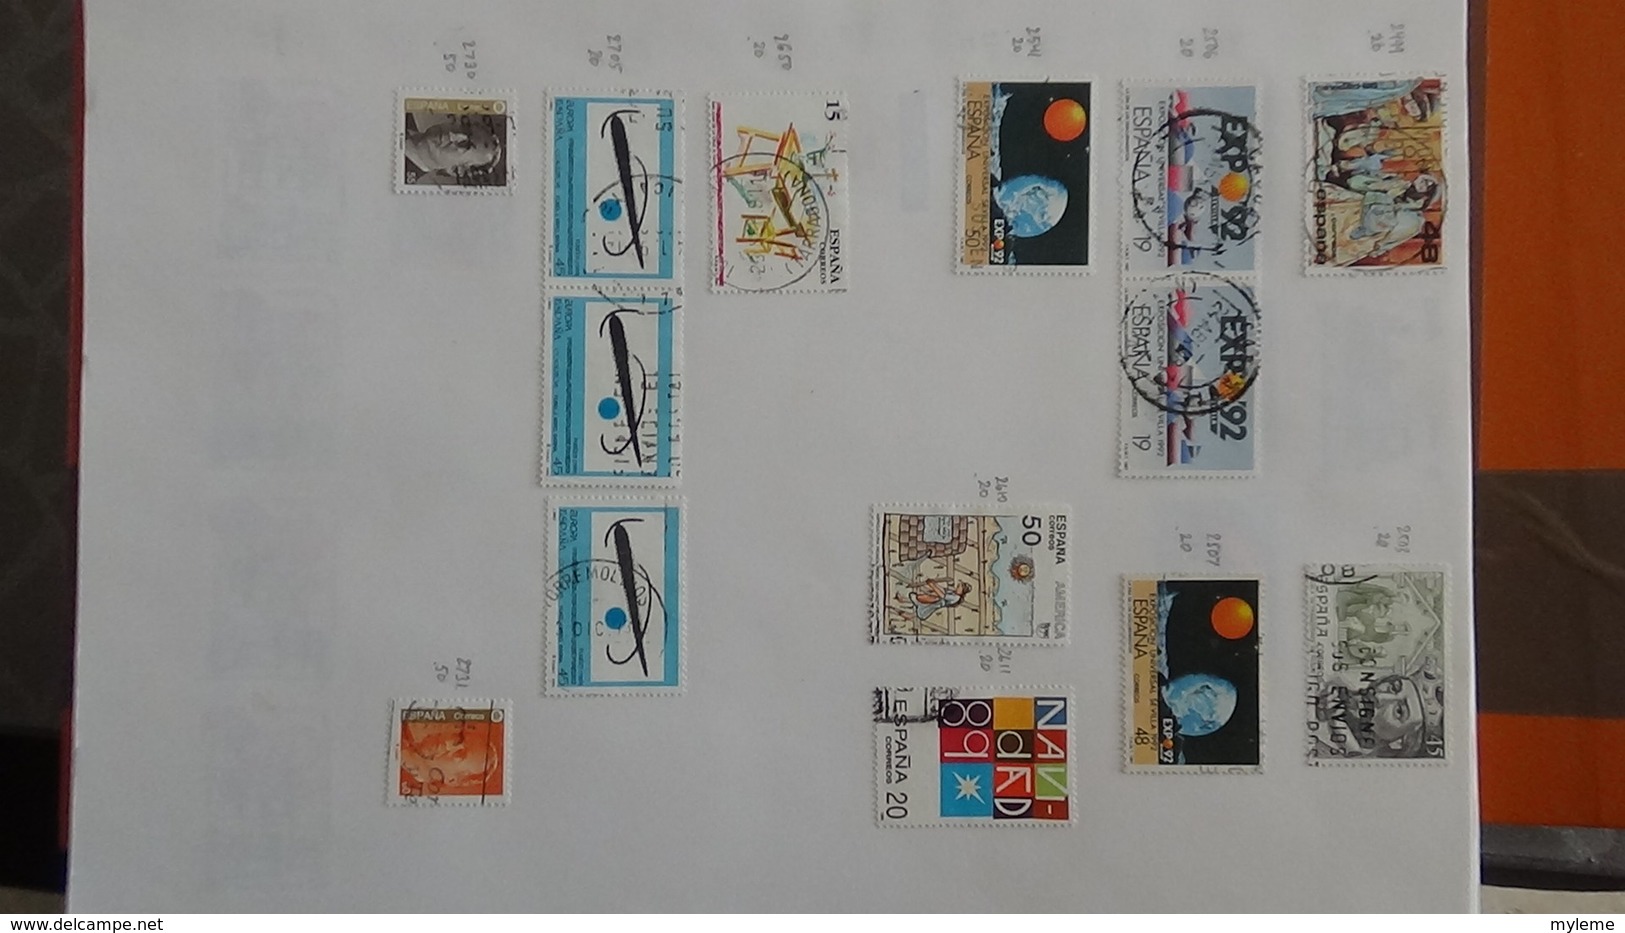 A254 Cahier de timbres d'Espagne  !!! Voir commentaires